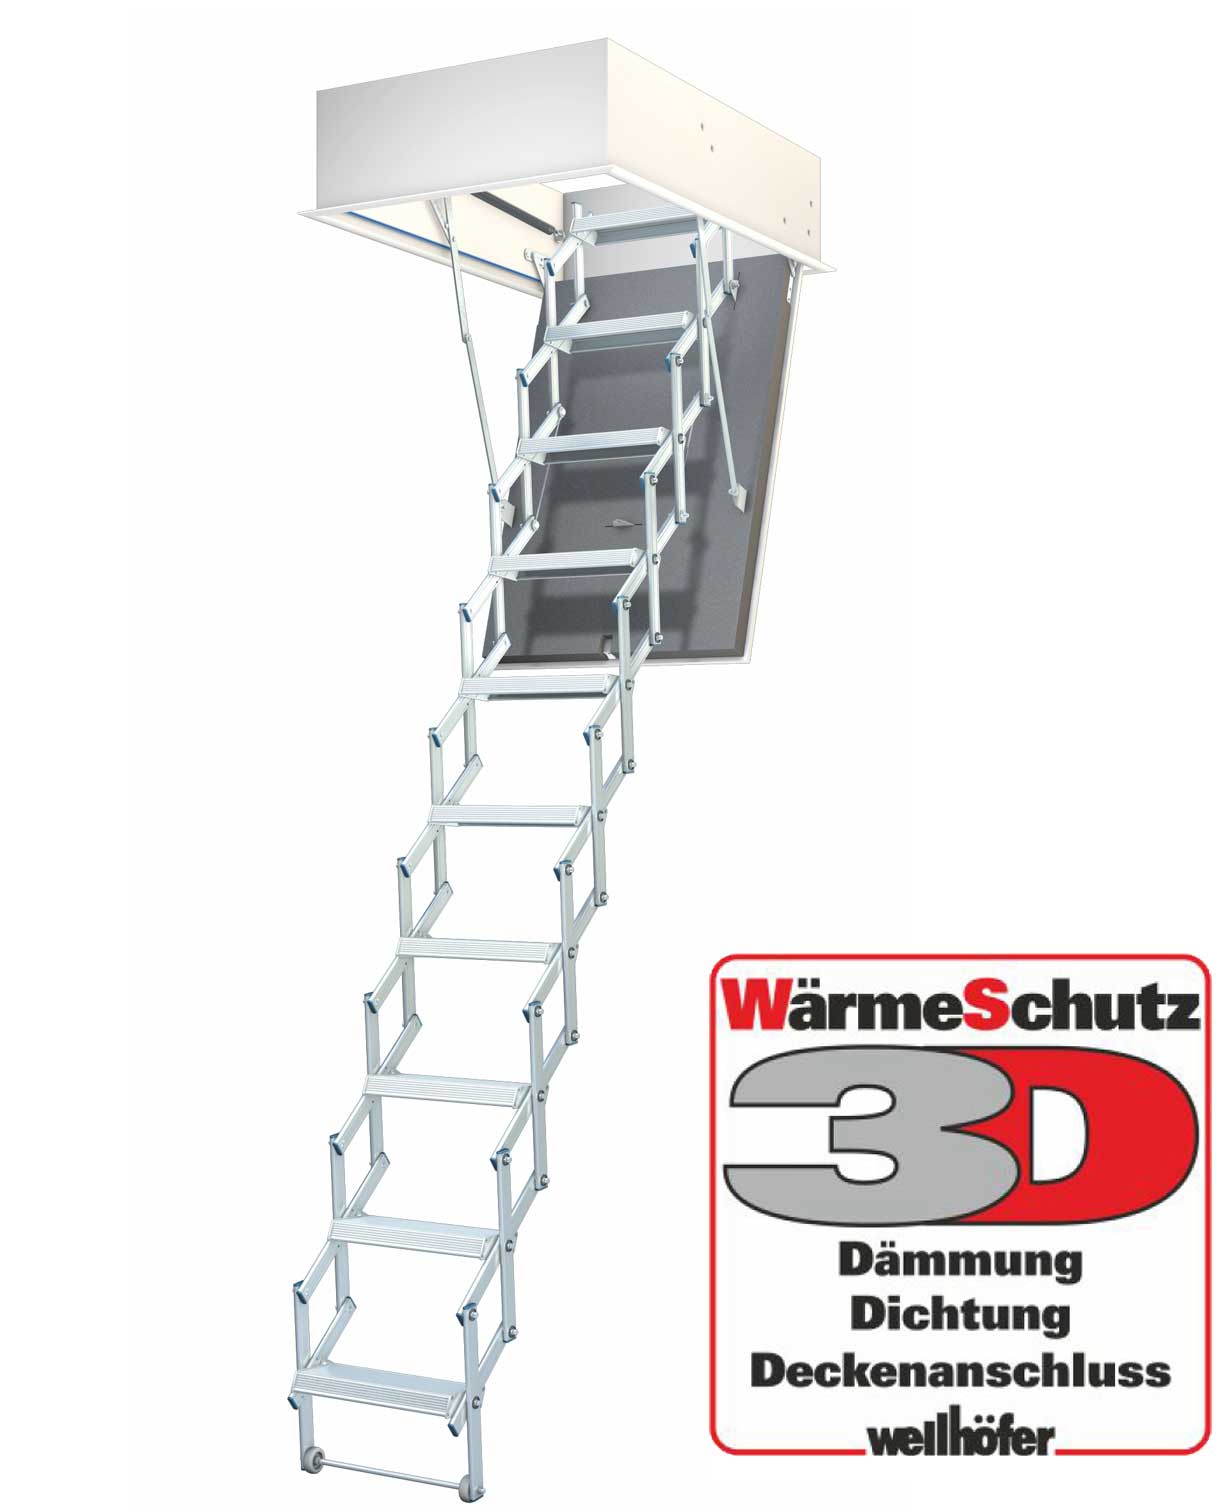 Wellhöfer Bodentreppe LiliPut + 3D Wärmeschutz 266-272 cm 100 x 60